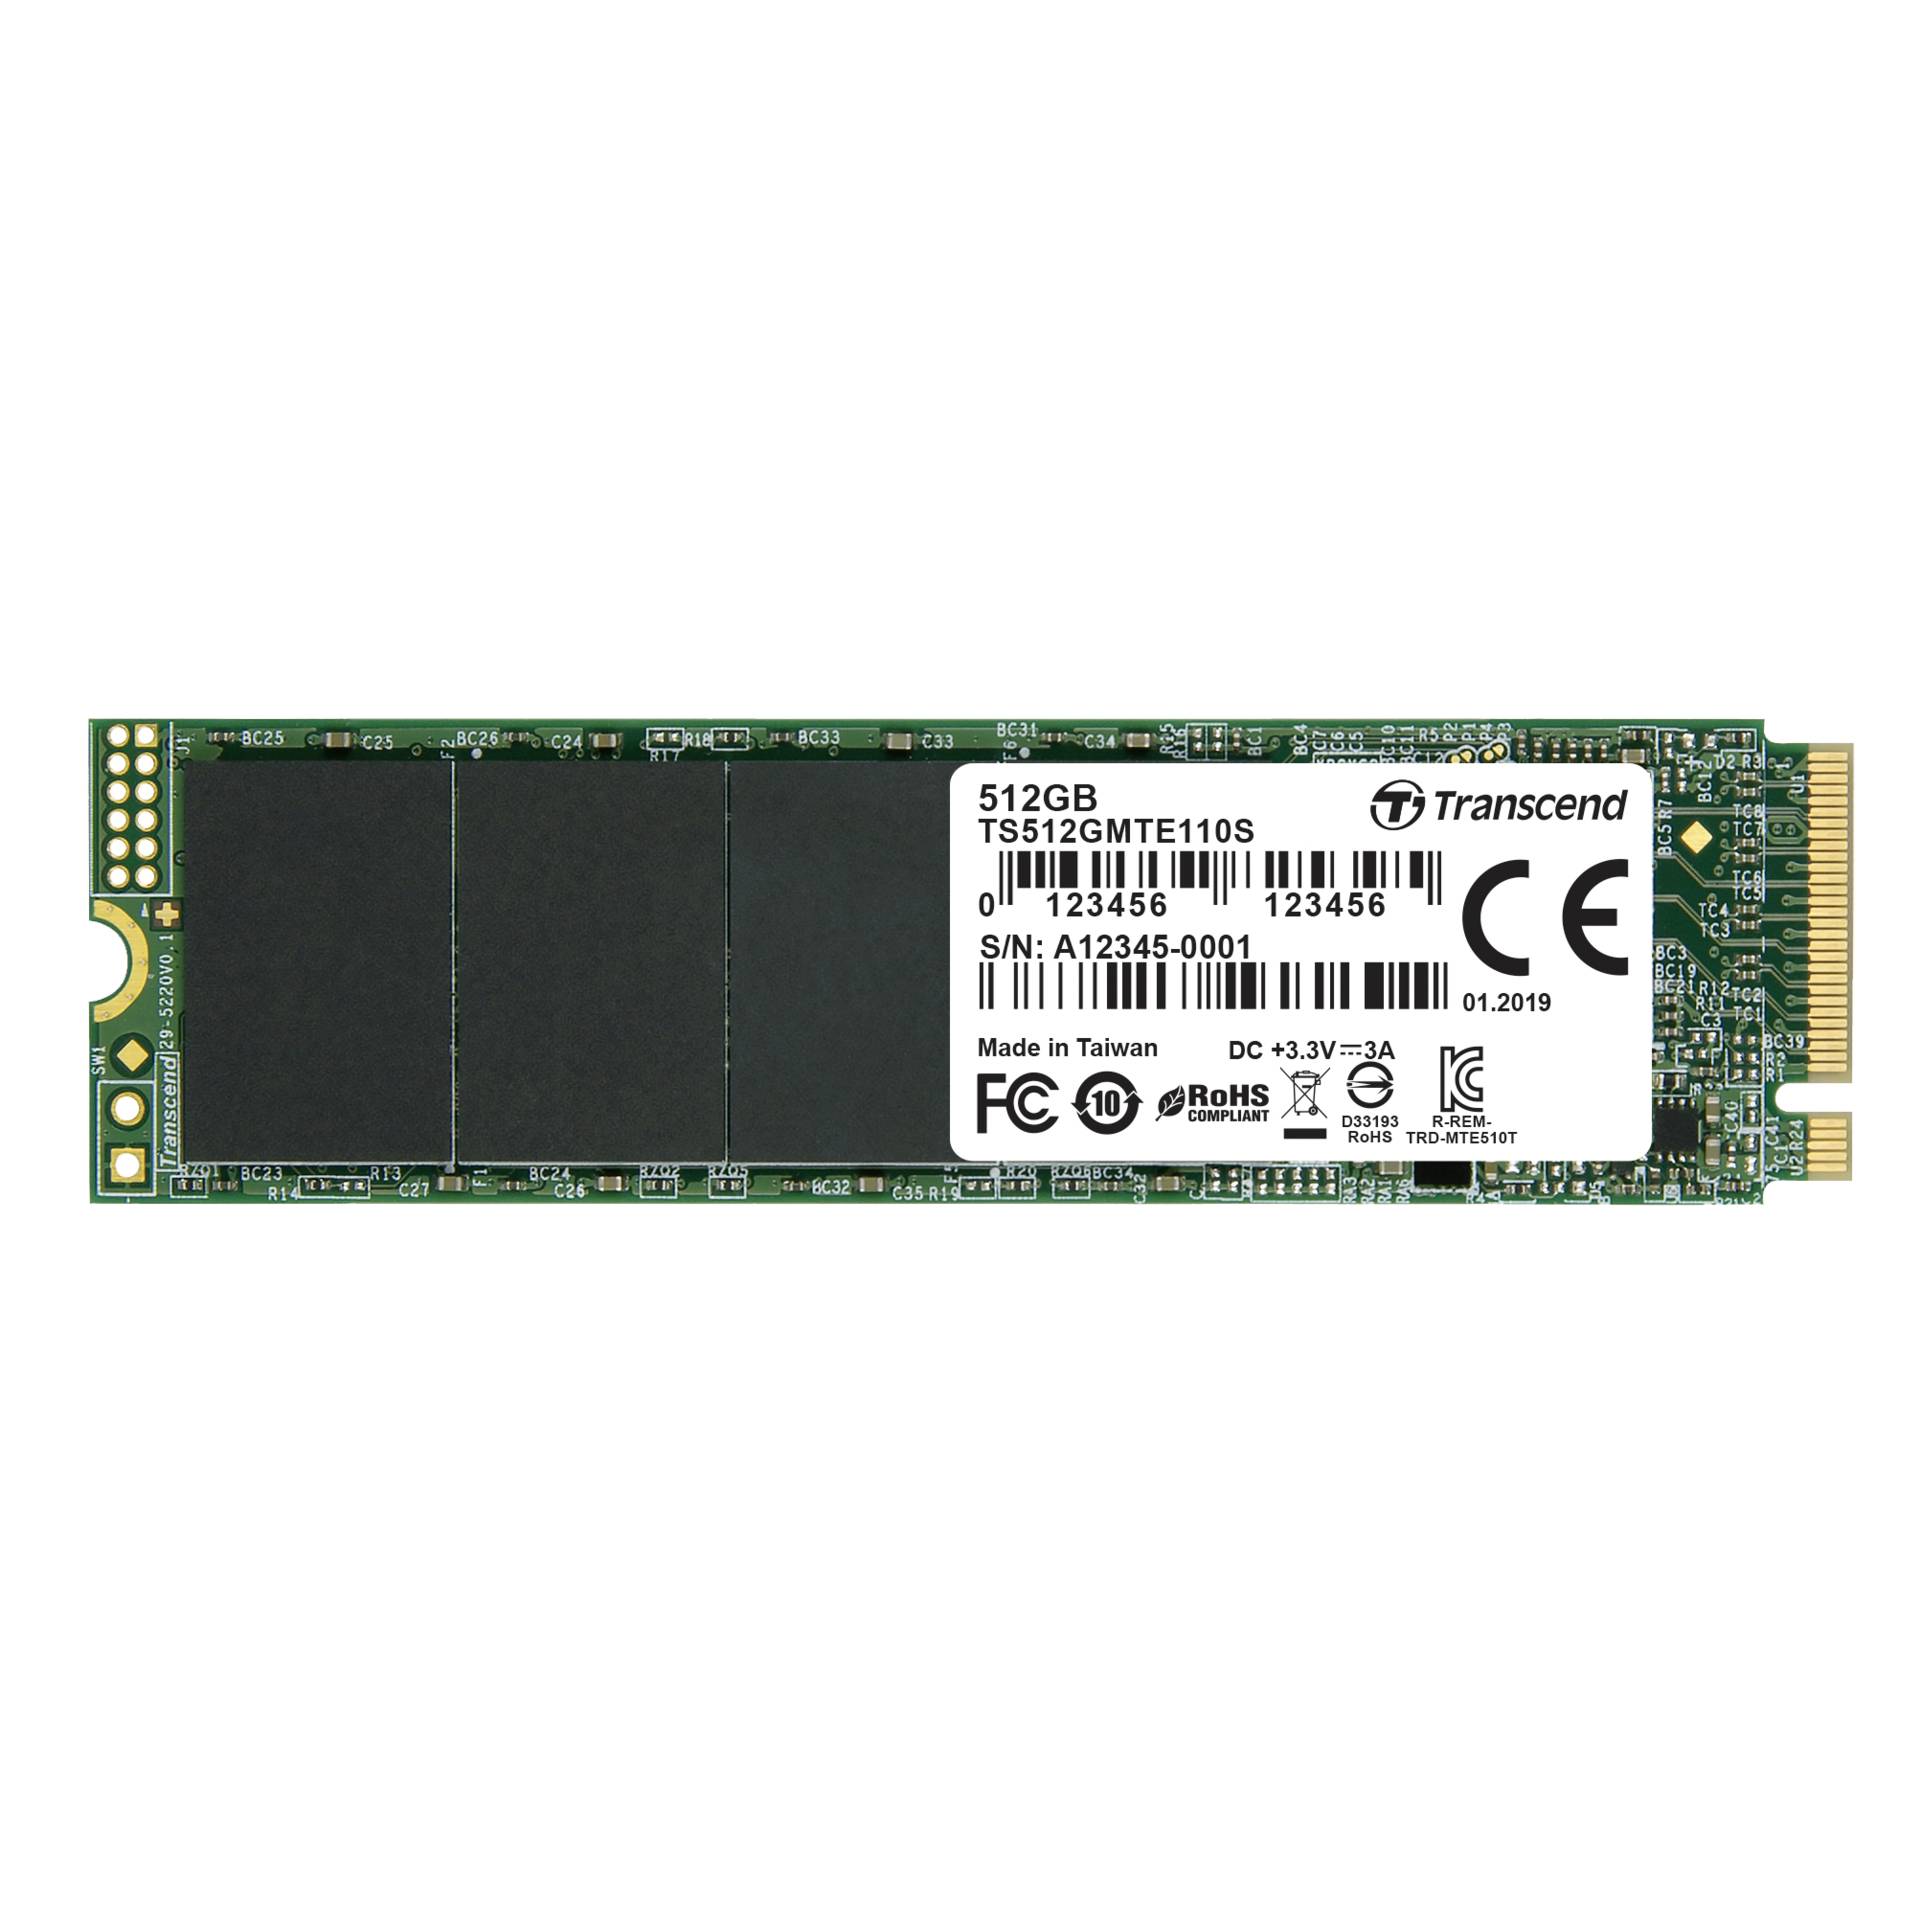 512 GB SSD Transcend MTE110S SSD, M.2/M-Key (PCIe 3.0 x4), lesen: 1700MB/s, schreiben: 1500MB/s, TBW: 200TB